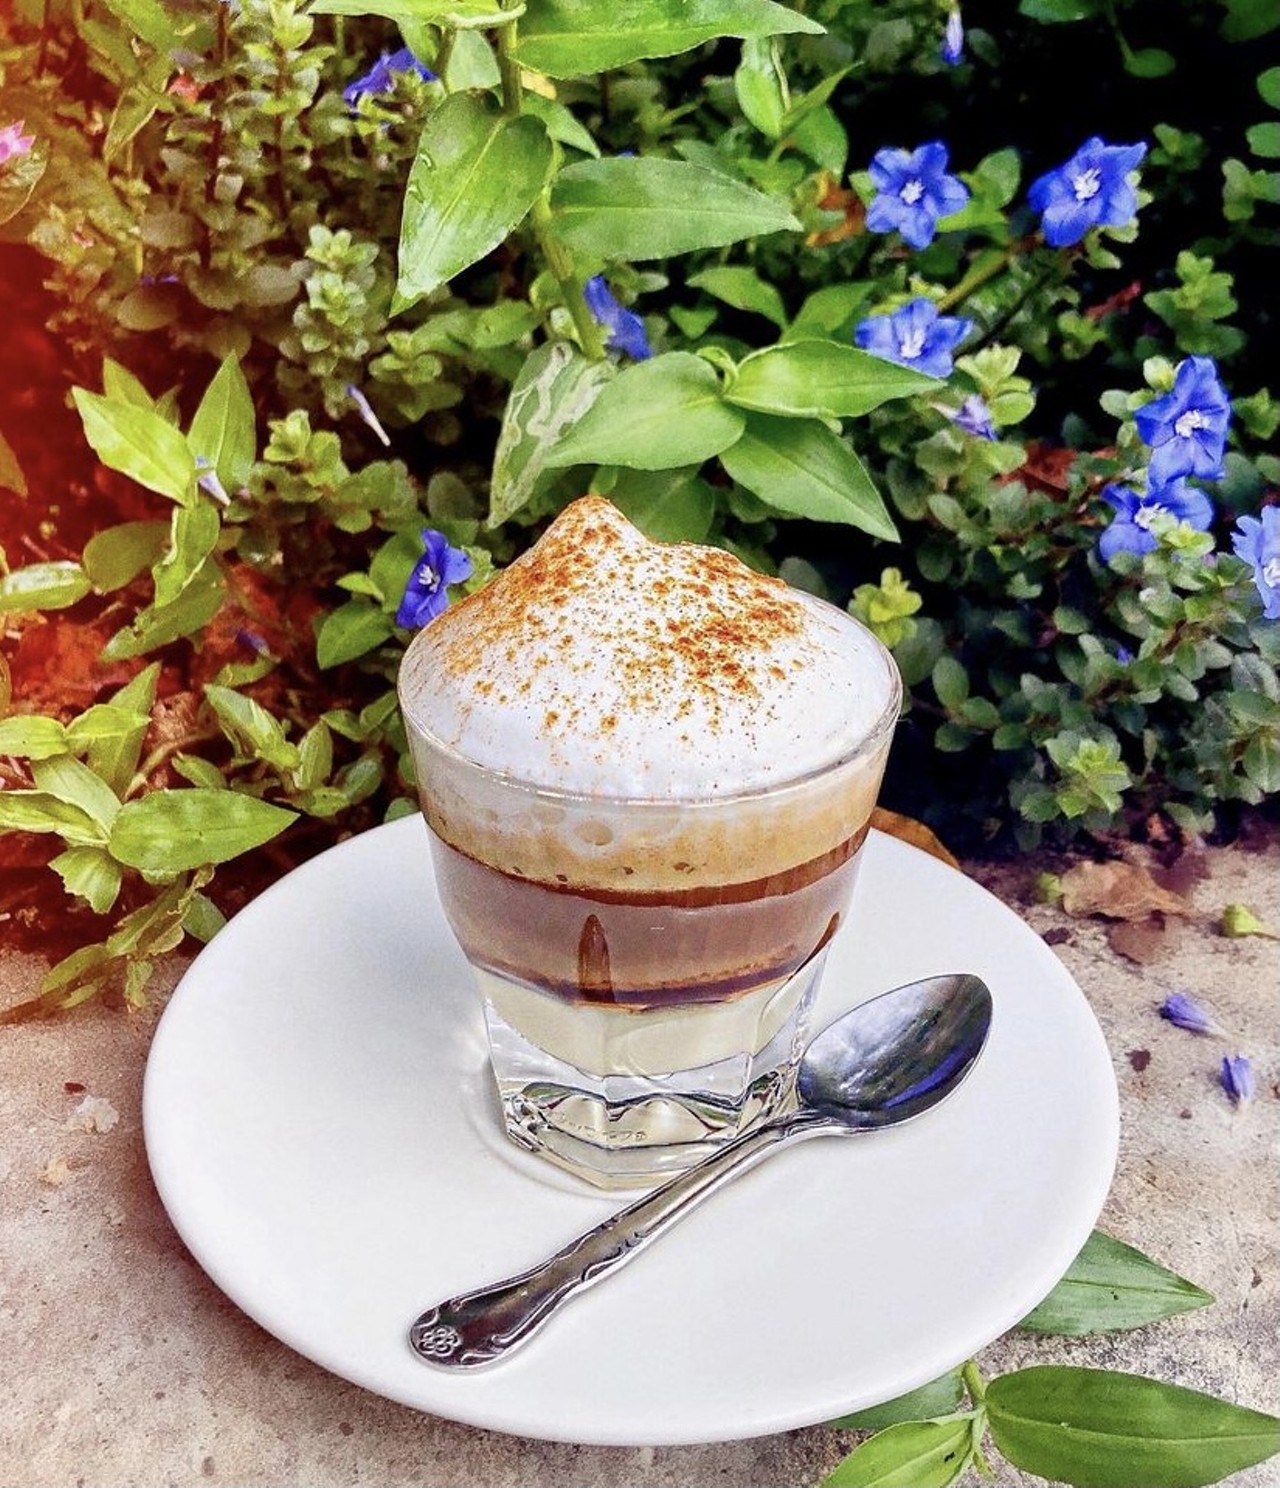 Le Cafe De Paris 
5170 Dr. Phillips Blvd. Orlando, FL 32819, (407) 923-2326
Enjoy delicious pastries and coffee in a cozy cafe with a Parisian touch. 
Photo via Le Cafe De Paris/Instagram